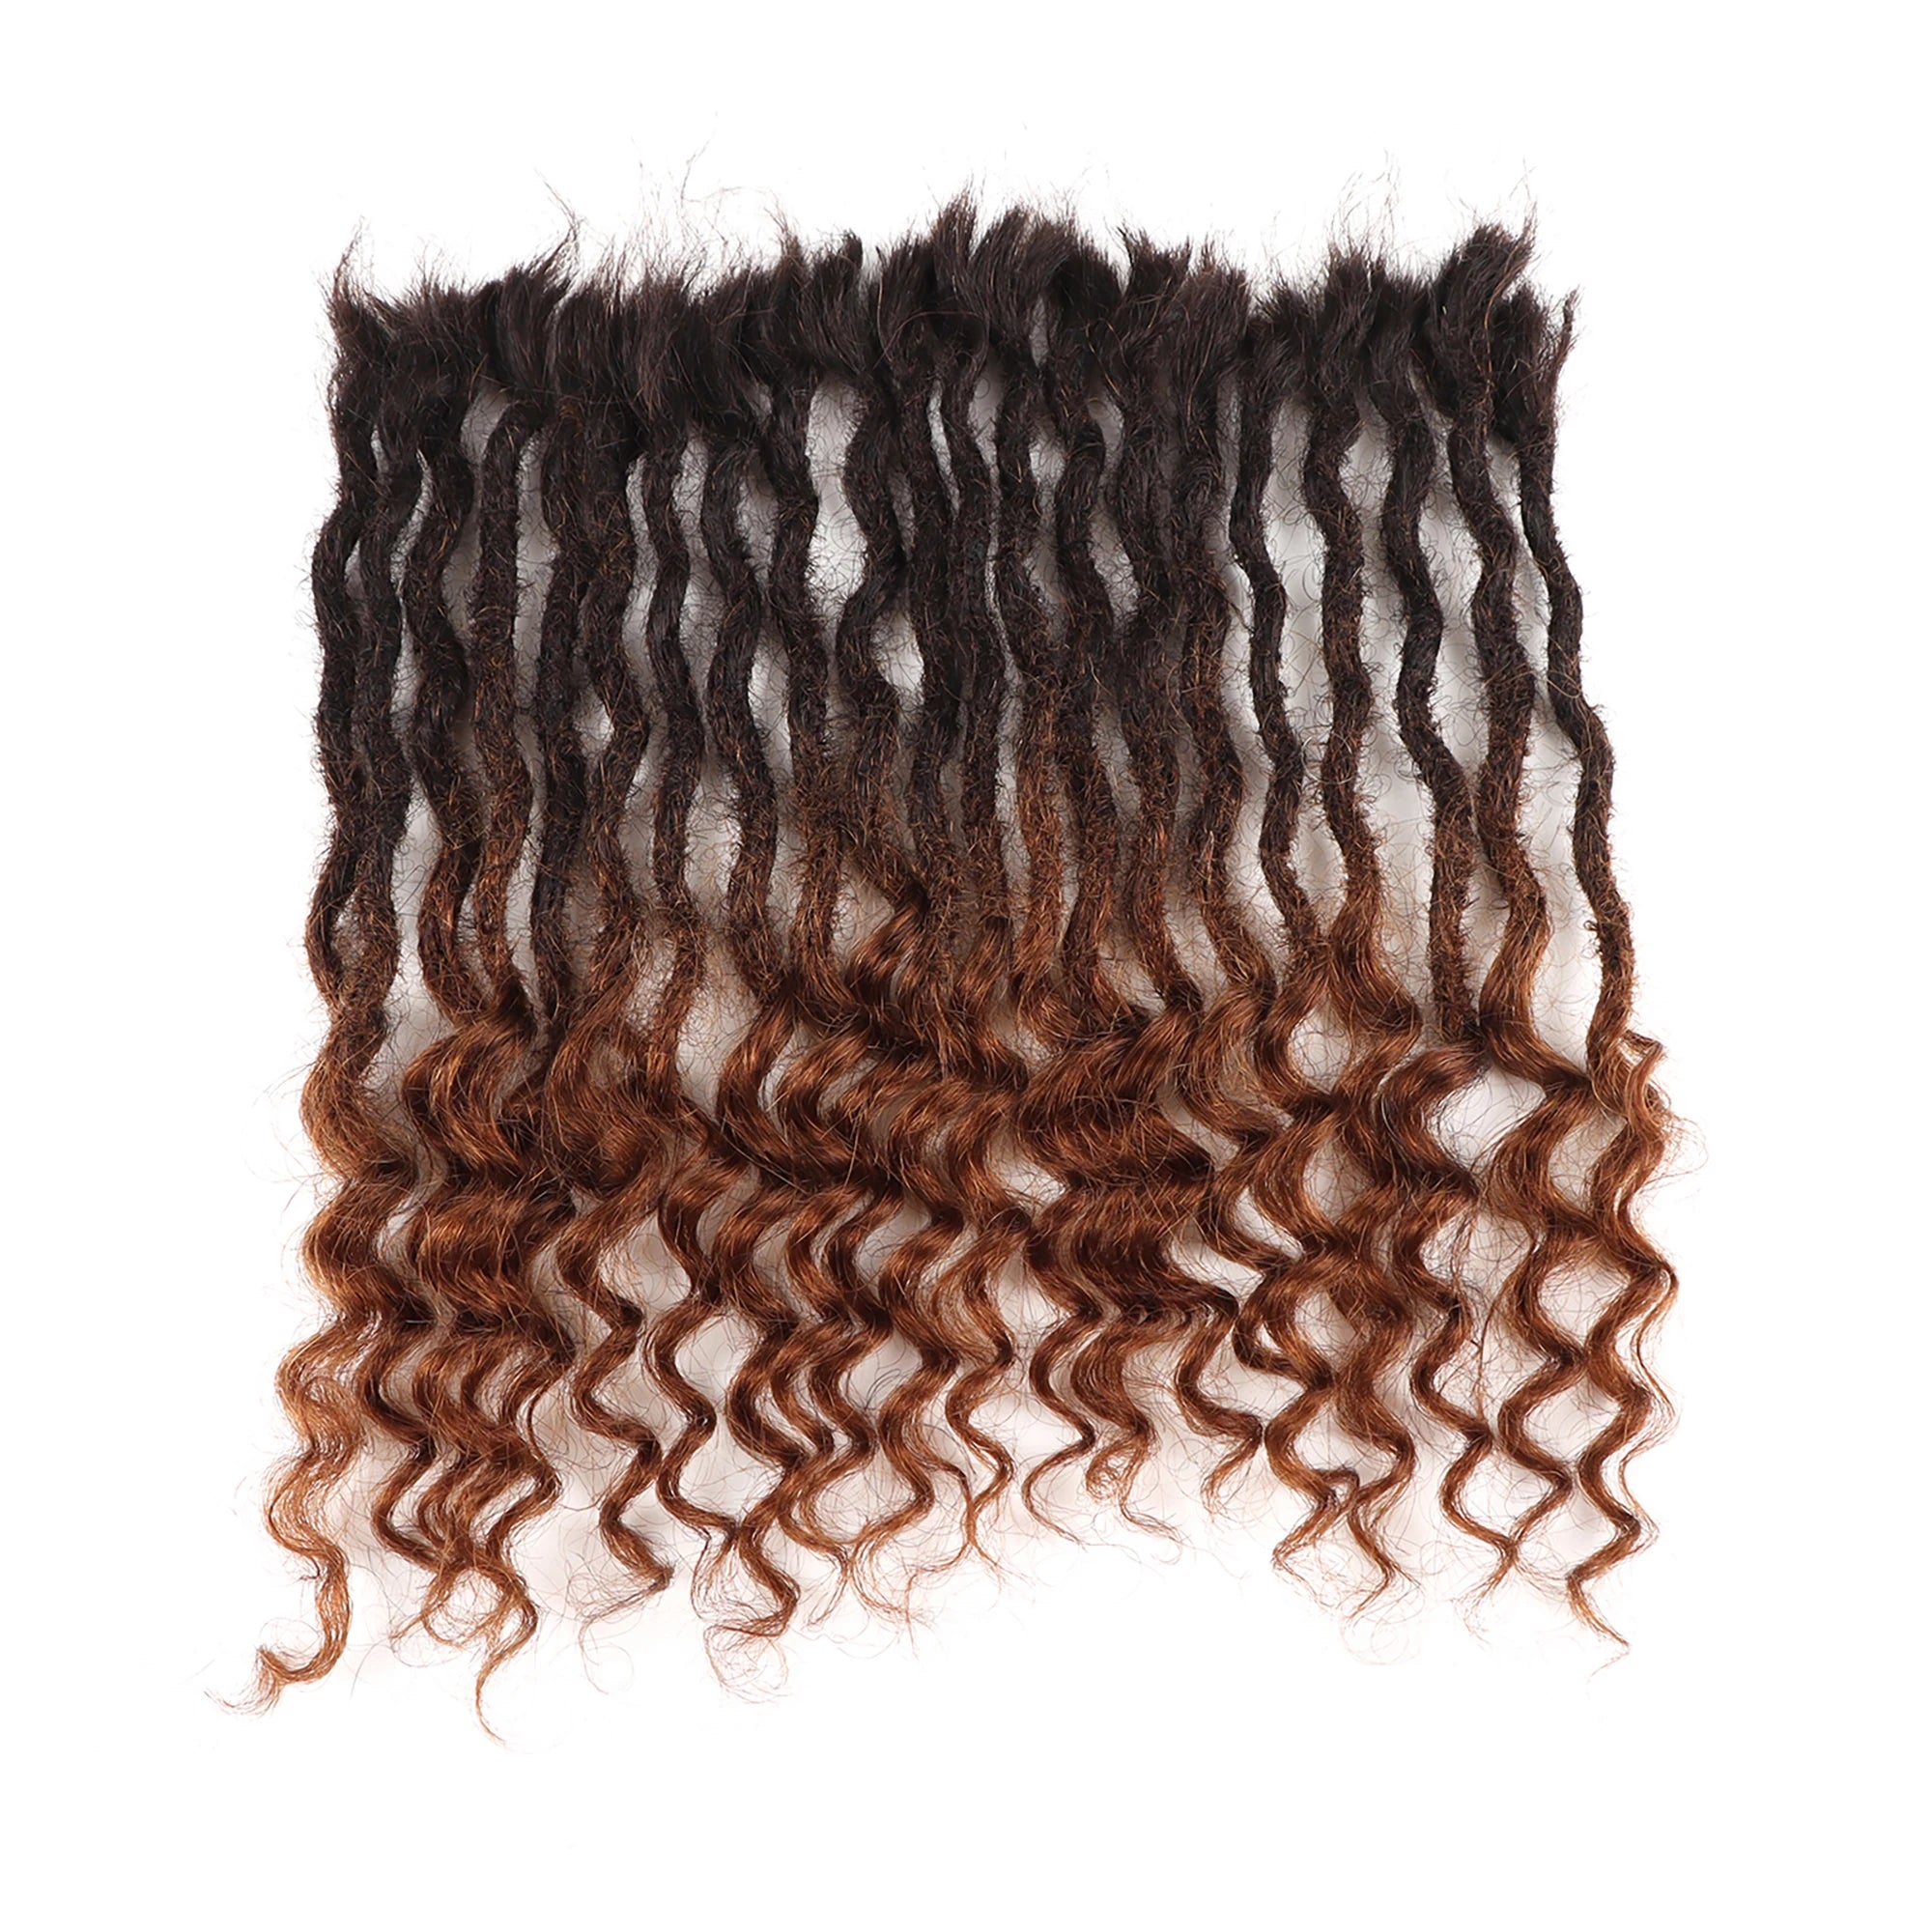 AHVAST 0.4cm 0.6cm 0.8cm Width 100%Human Hair Textured  Loc Extension Natural Hair Curly Hair,Full Handmade Permanent Hair